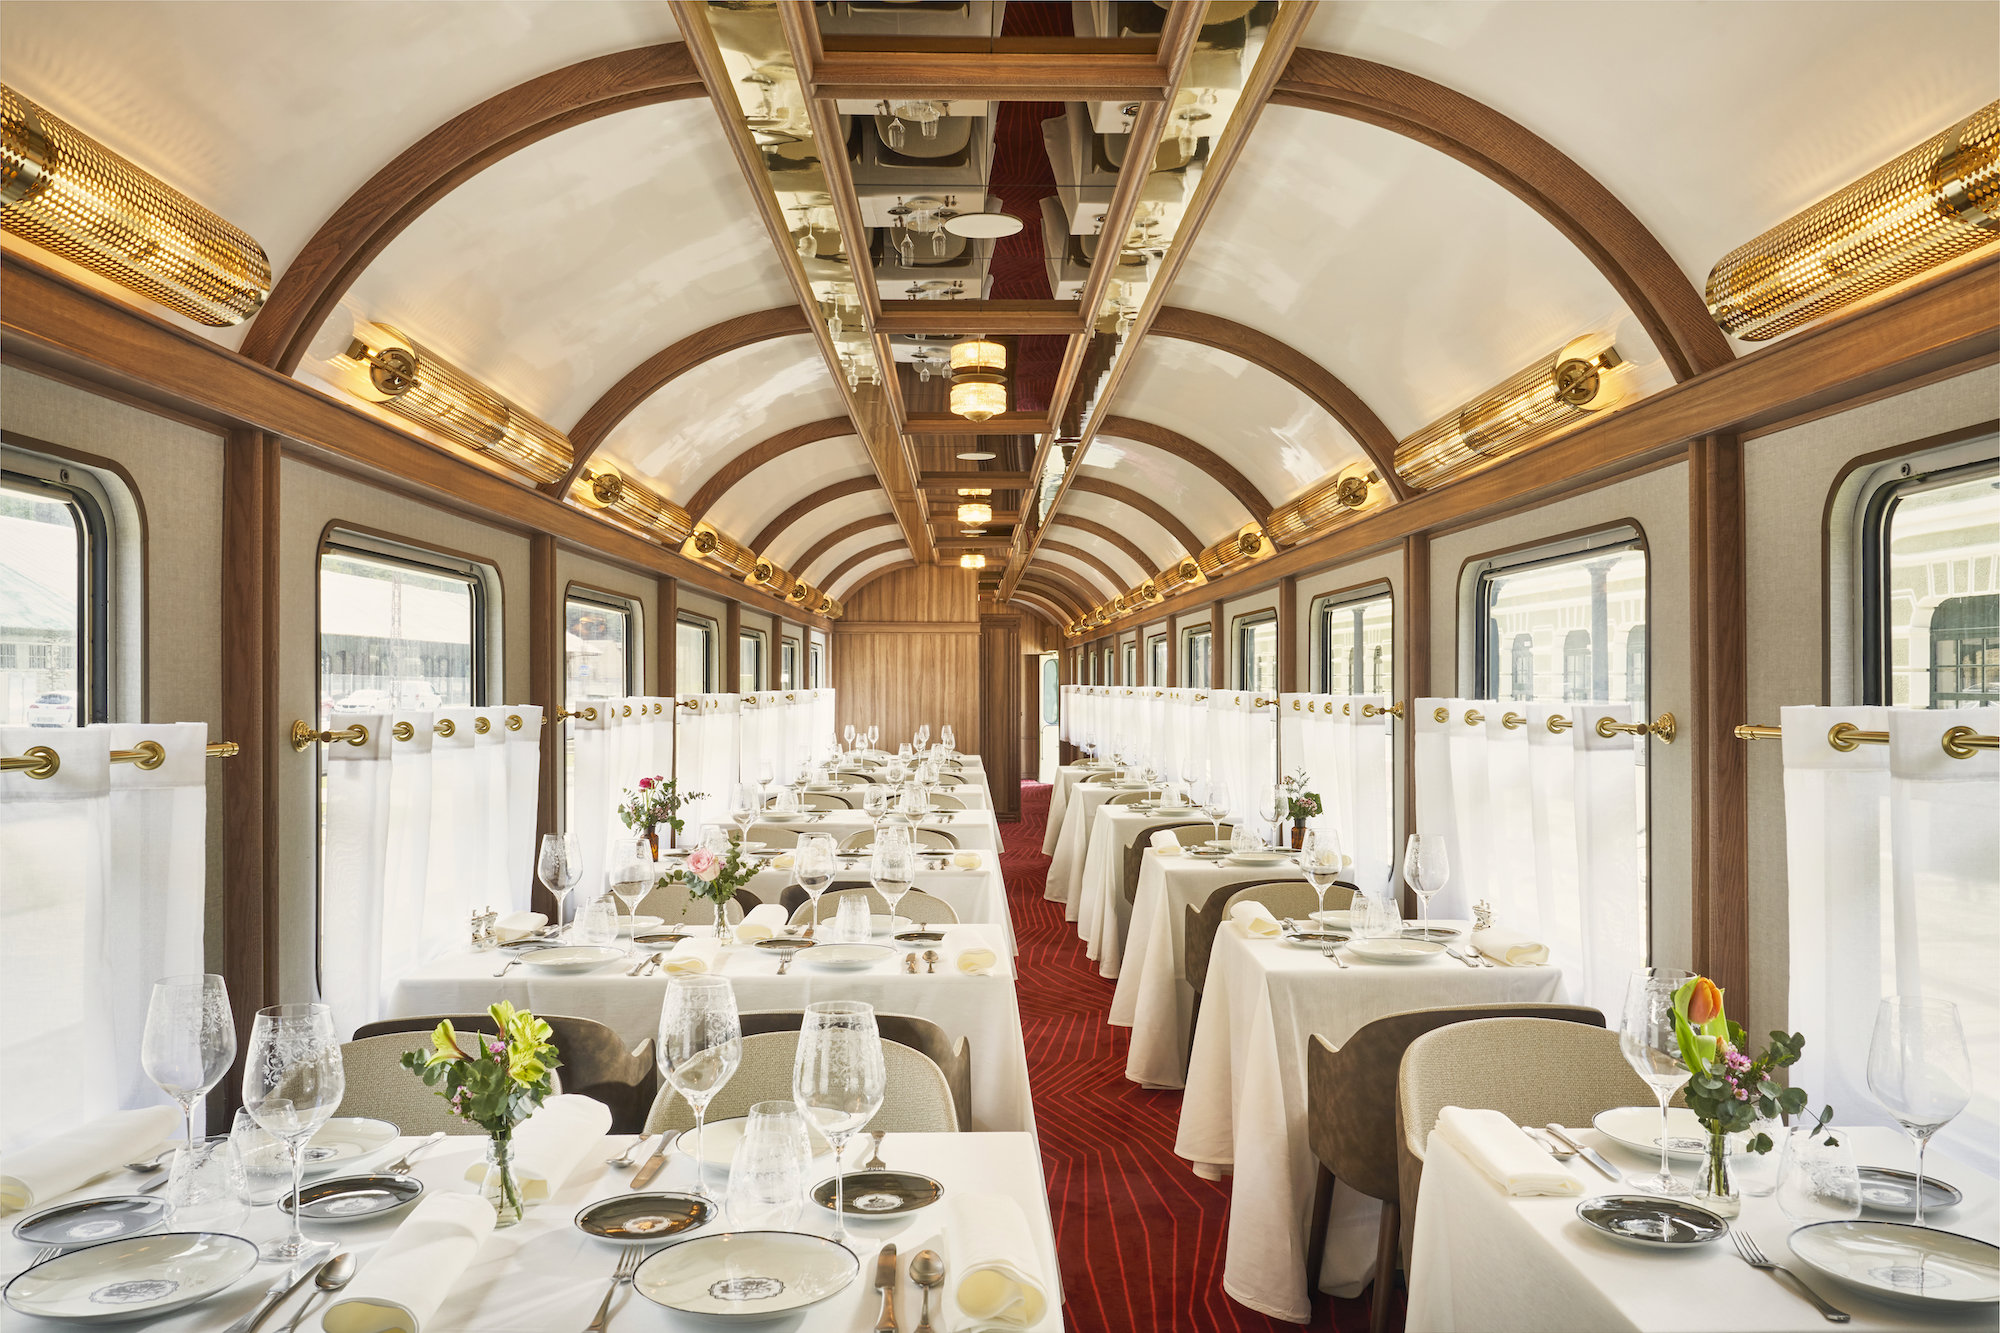 El restaurante se inspira en el Orient Express.